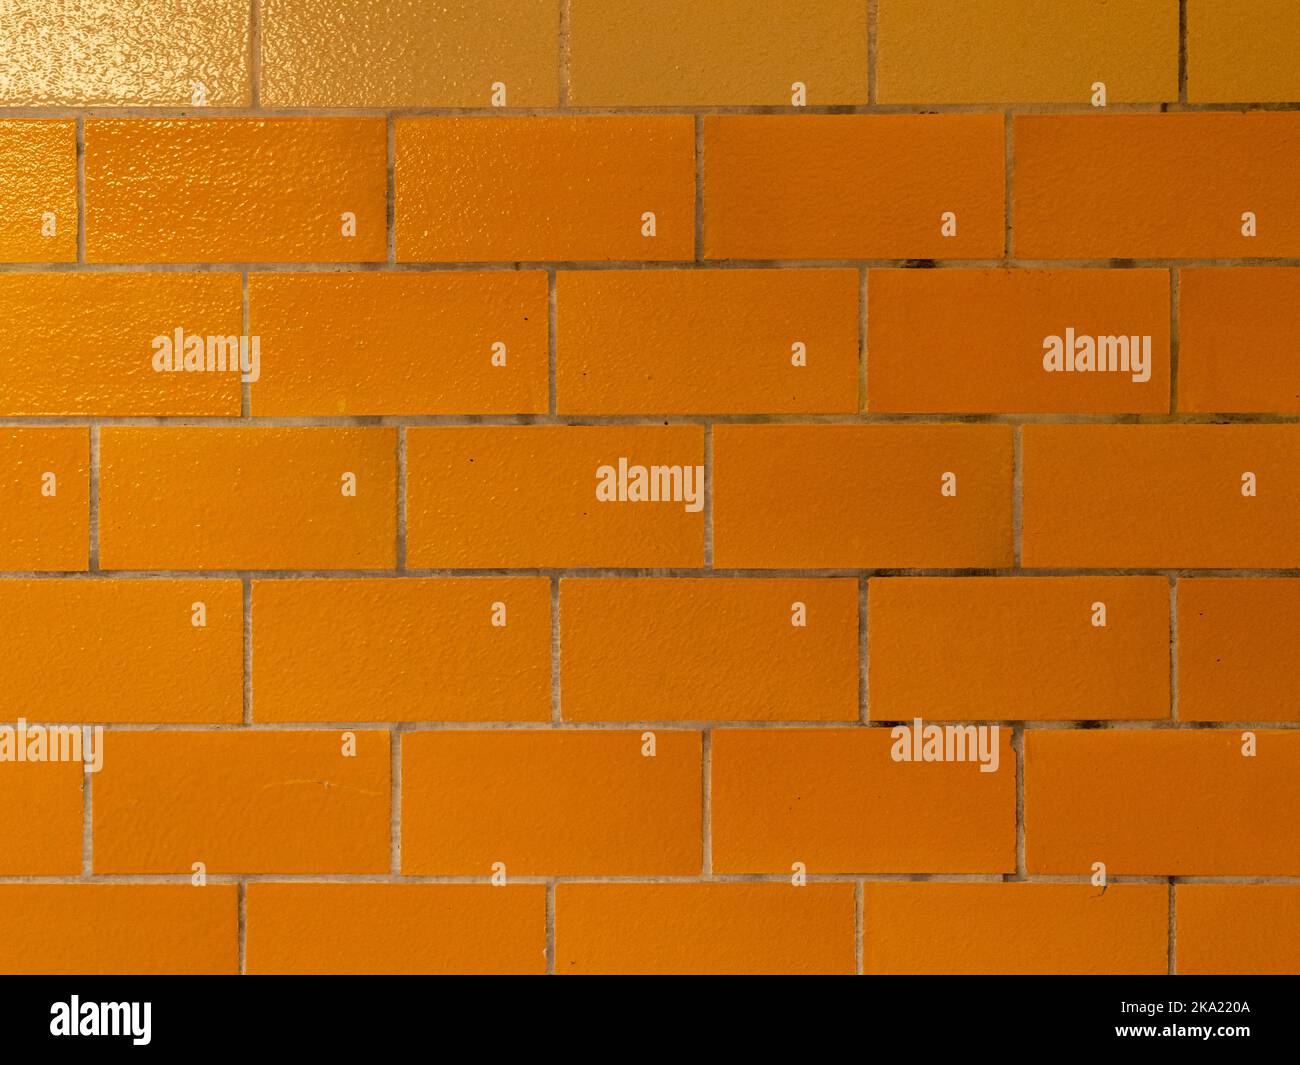 Primo piano di una parete piastrellata gialla. Struttura di sfondo di una vecchia facciata all'interno di un edificio. Design del materiale lucido con giunti delle piastrelle sporchi. Foto Stock